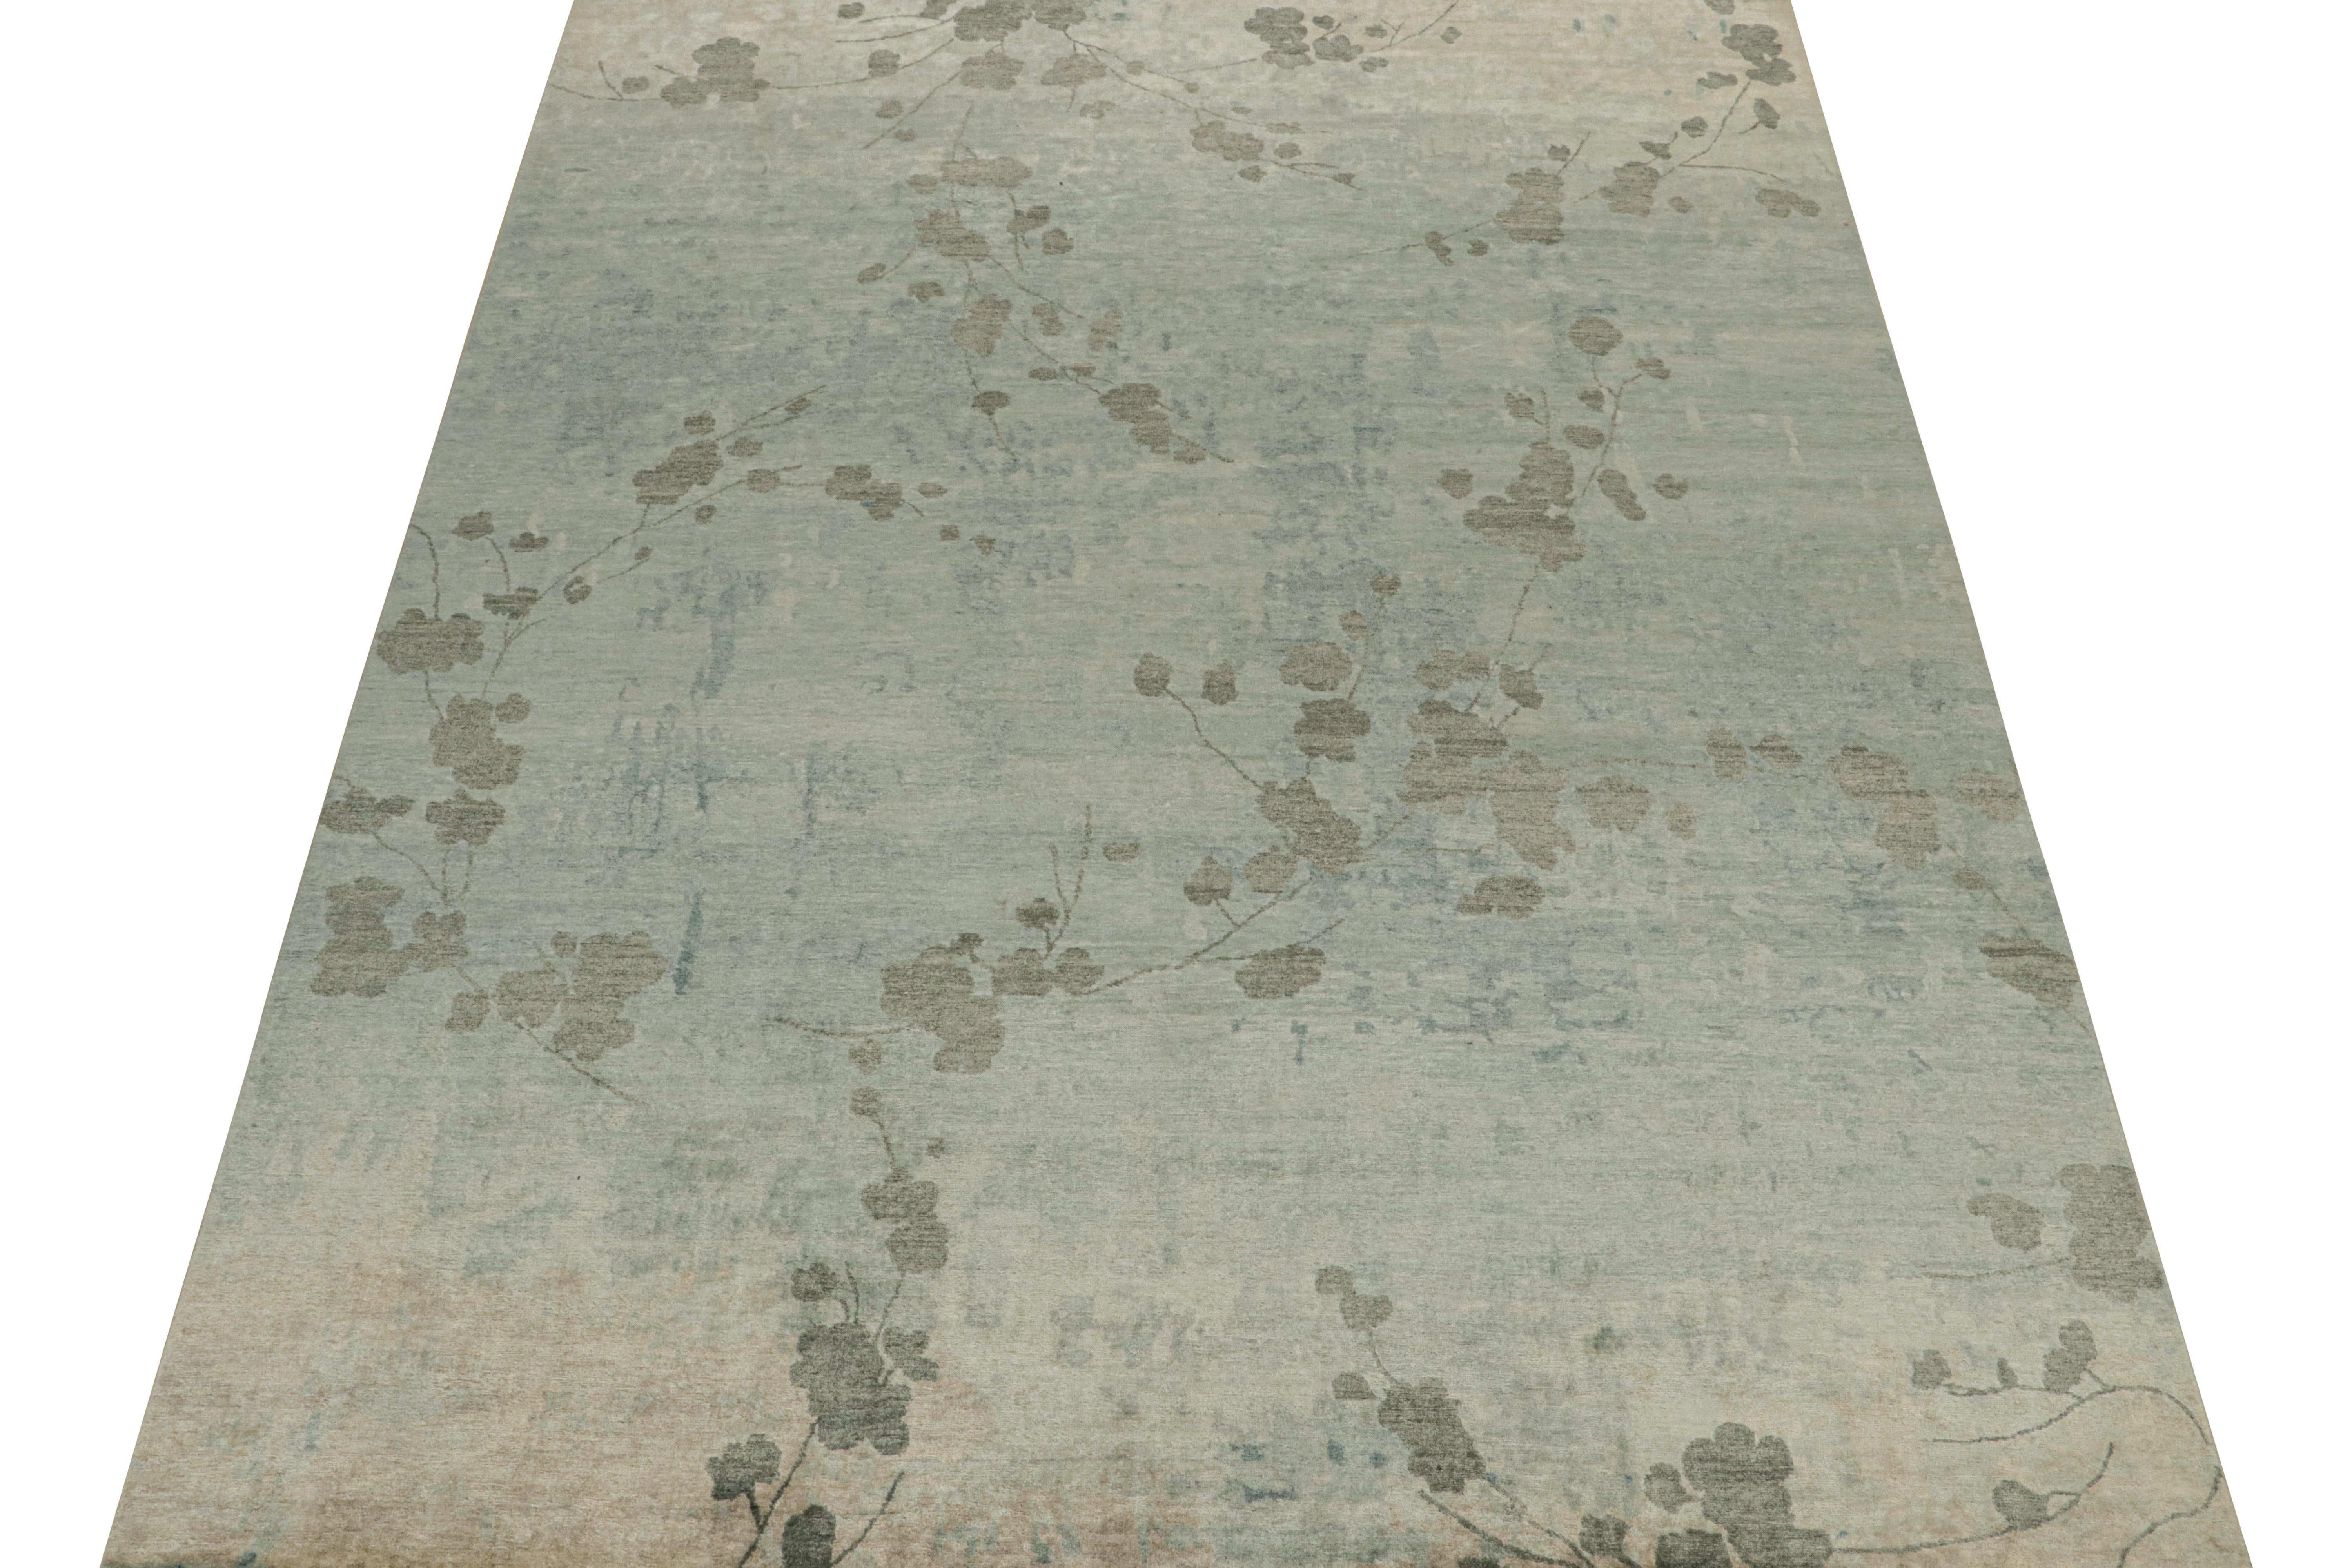 Dieser abstrakte Teppich im Format 9x12 ist eine kühne Ergänzung der Modern-Teppichkollektion von Rug & Kilim. Das aus Wolle und Seide handgeknüpfte Design erkundet malerische Sensibilitäten in außergewöhnlicher High-End-Qualität.

Aufmerksame Augen